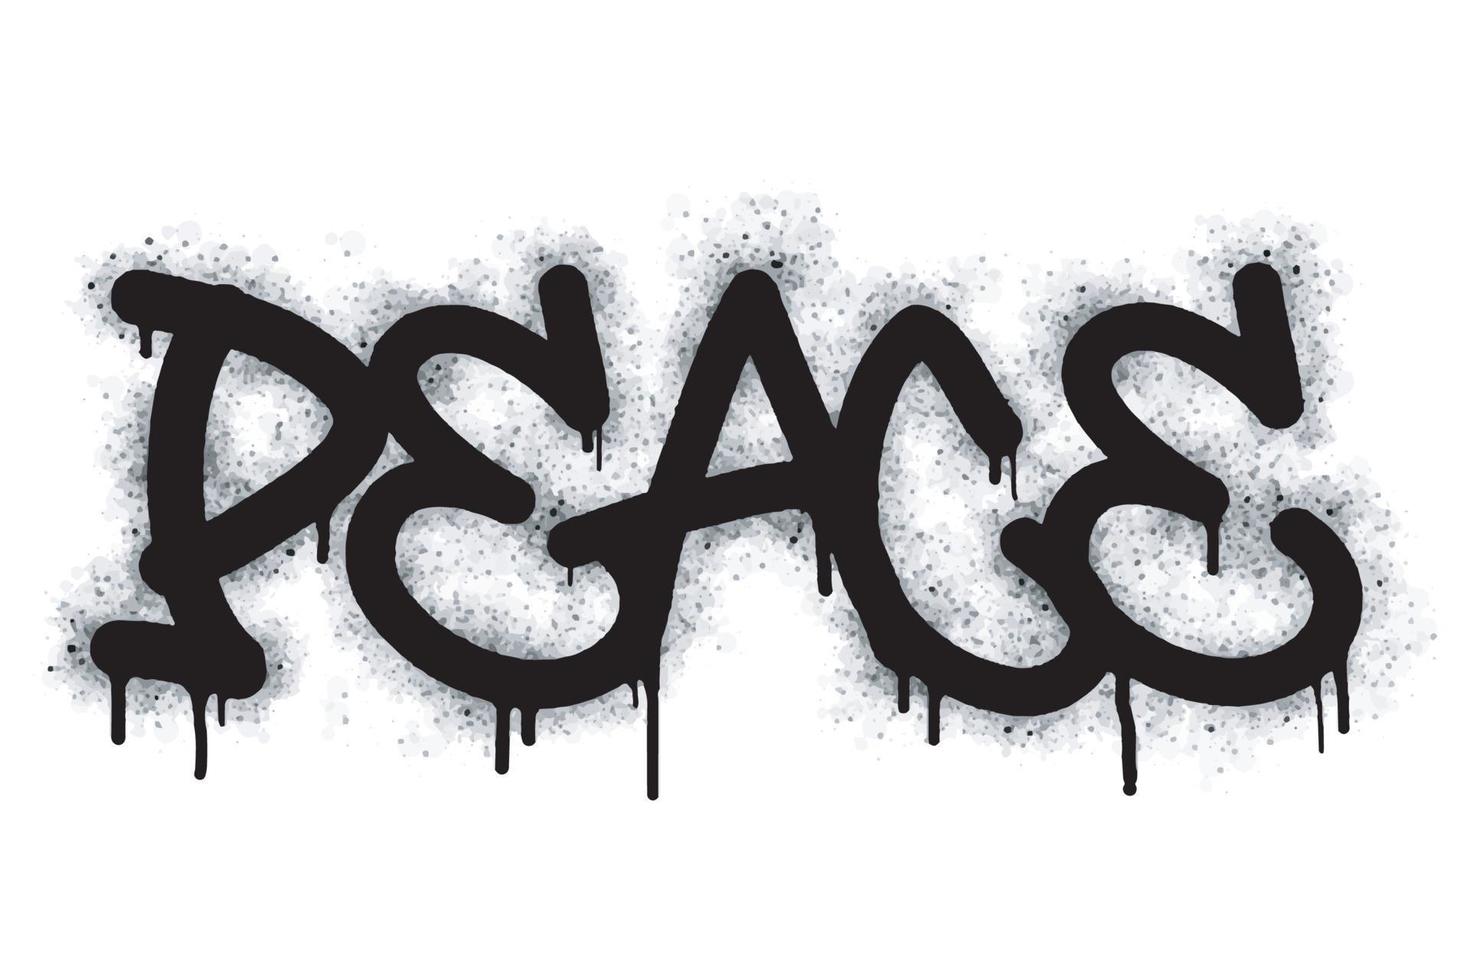 graffiti pace parola e simbolo spruzzato nel nero vettore